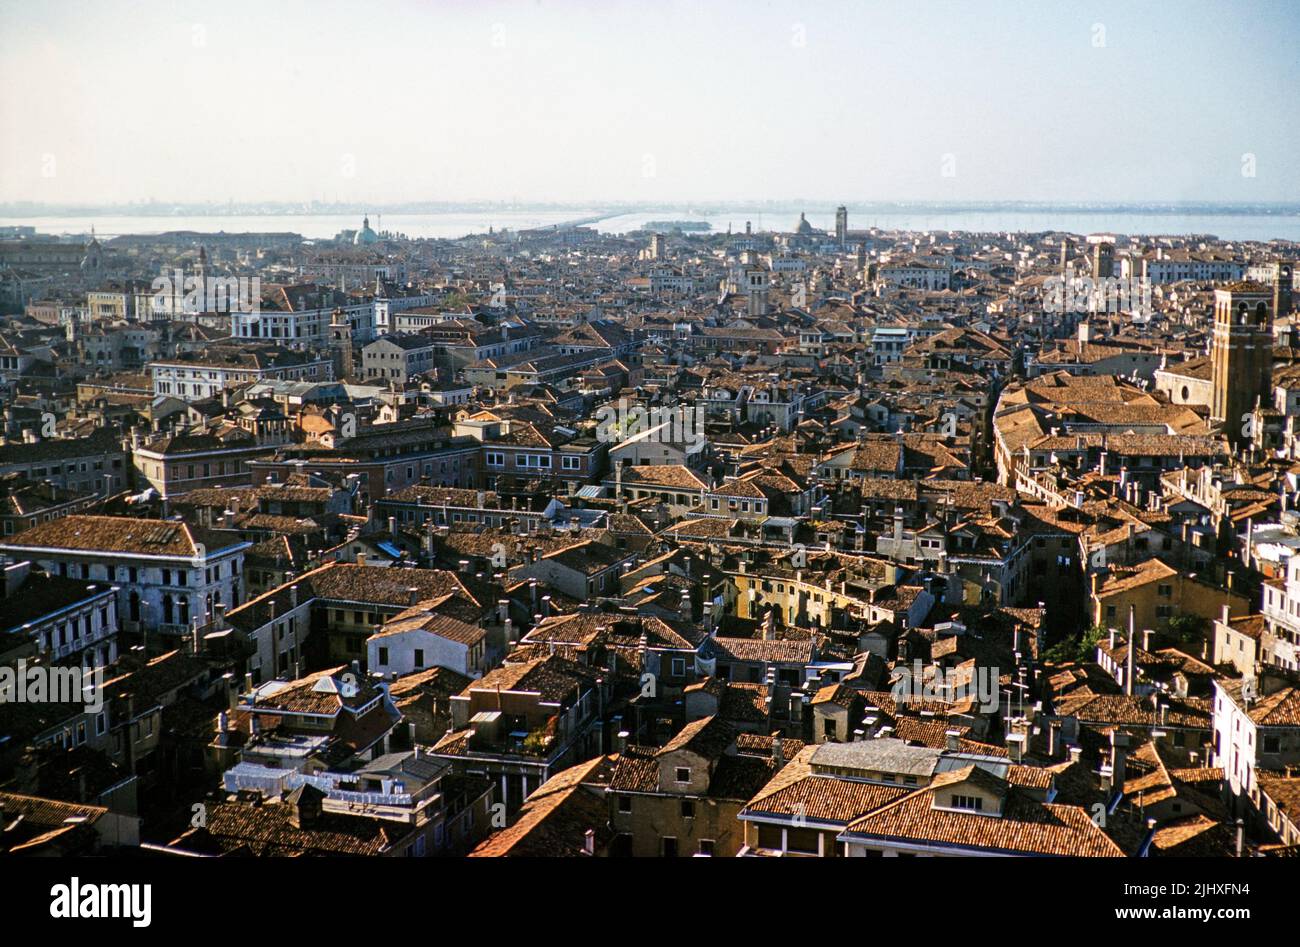 Vista oblicua elevada al oeste sobre los tejados de edificios histéricos, Venecia, Italia, 1959 Foto de stock